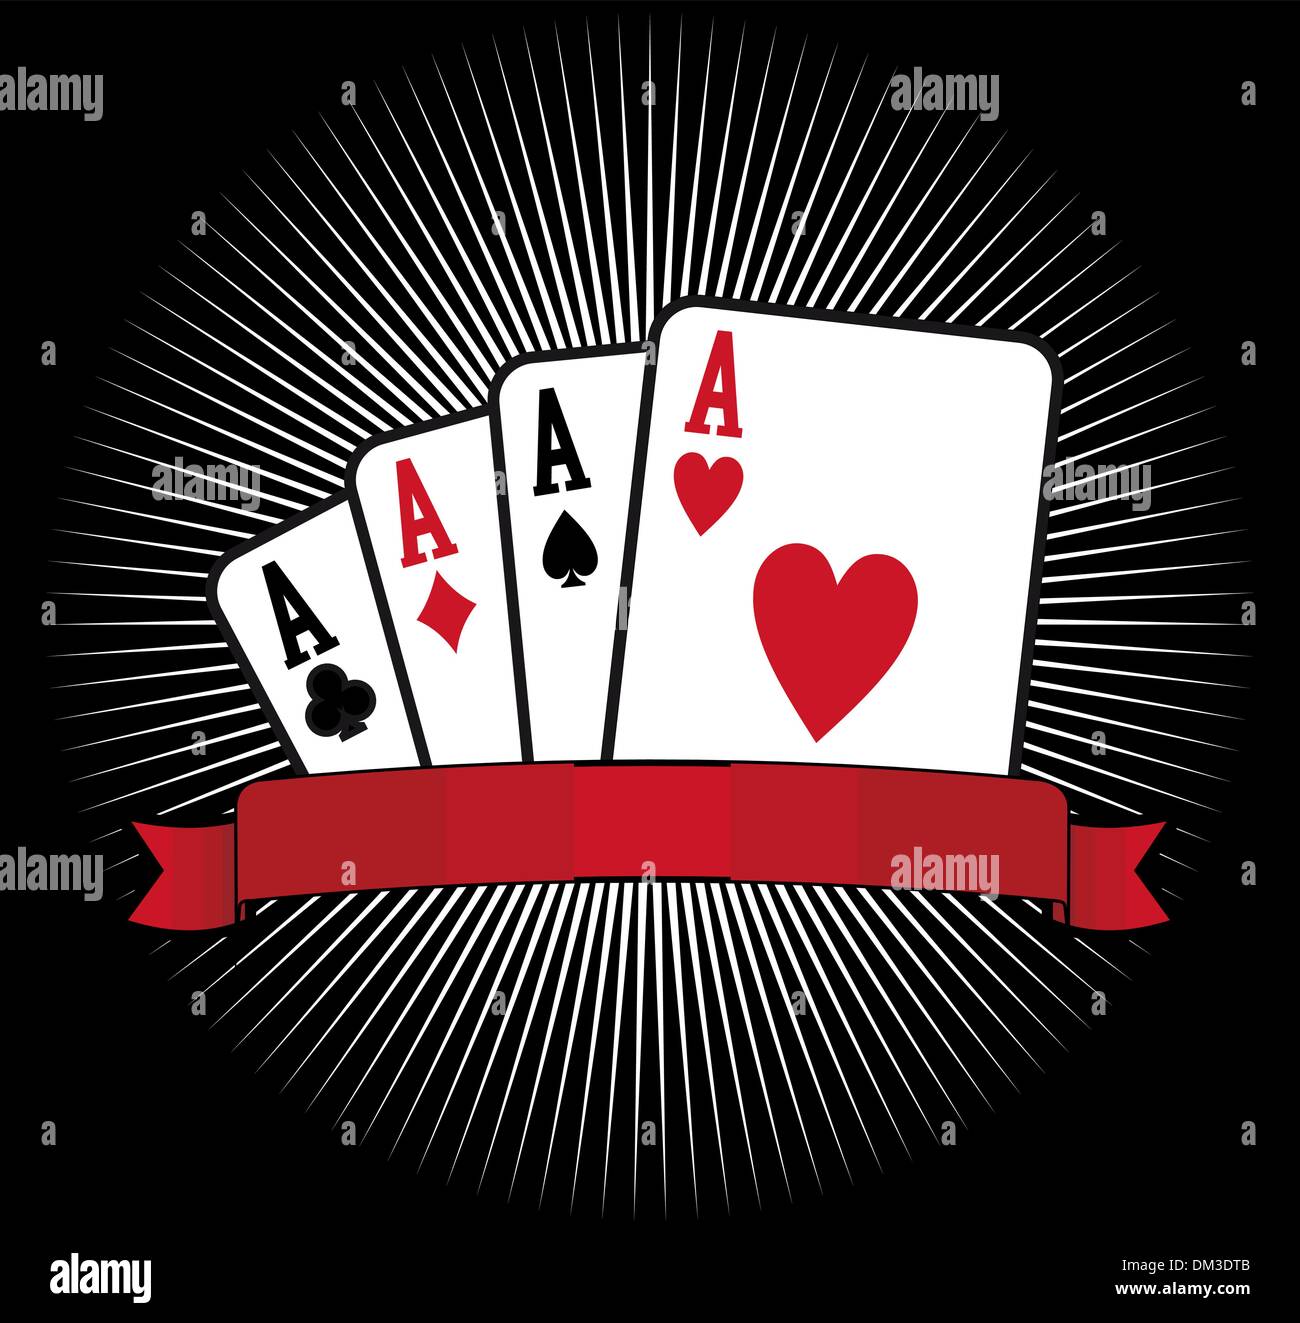 Cuatro ases poker Imágenes vectoriales de stock - Alamy